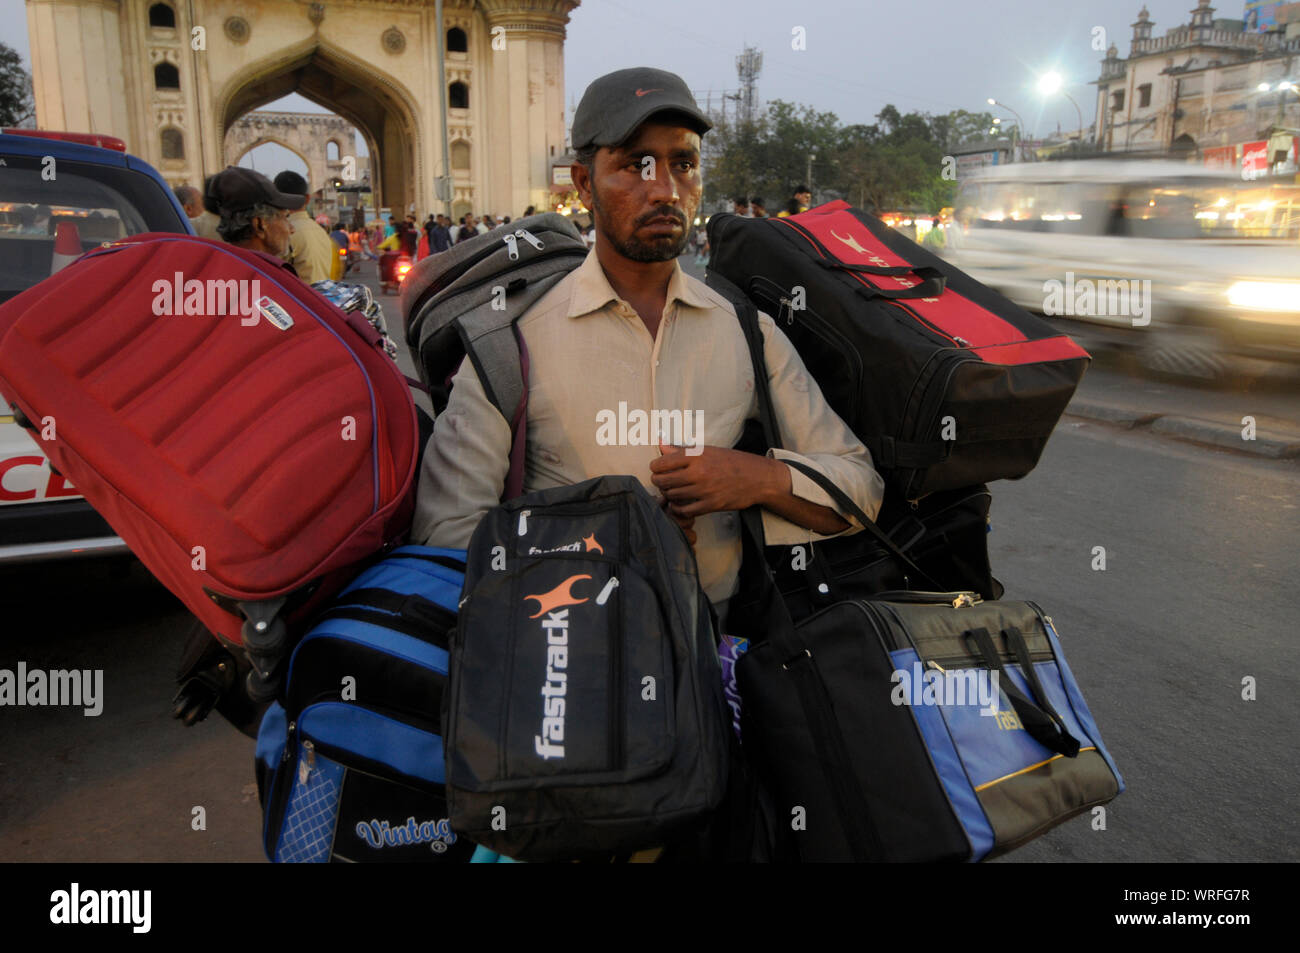 Un venditore ambulante vendita di borse da viaggio nella trafficata vecchio mercato di Hyderabad nel sud dello stato indiano Andhra Pradesh. Fotografia: Sondeep Shankar Foto Stock